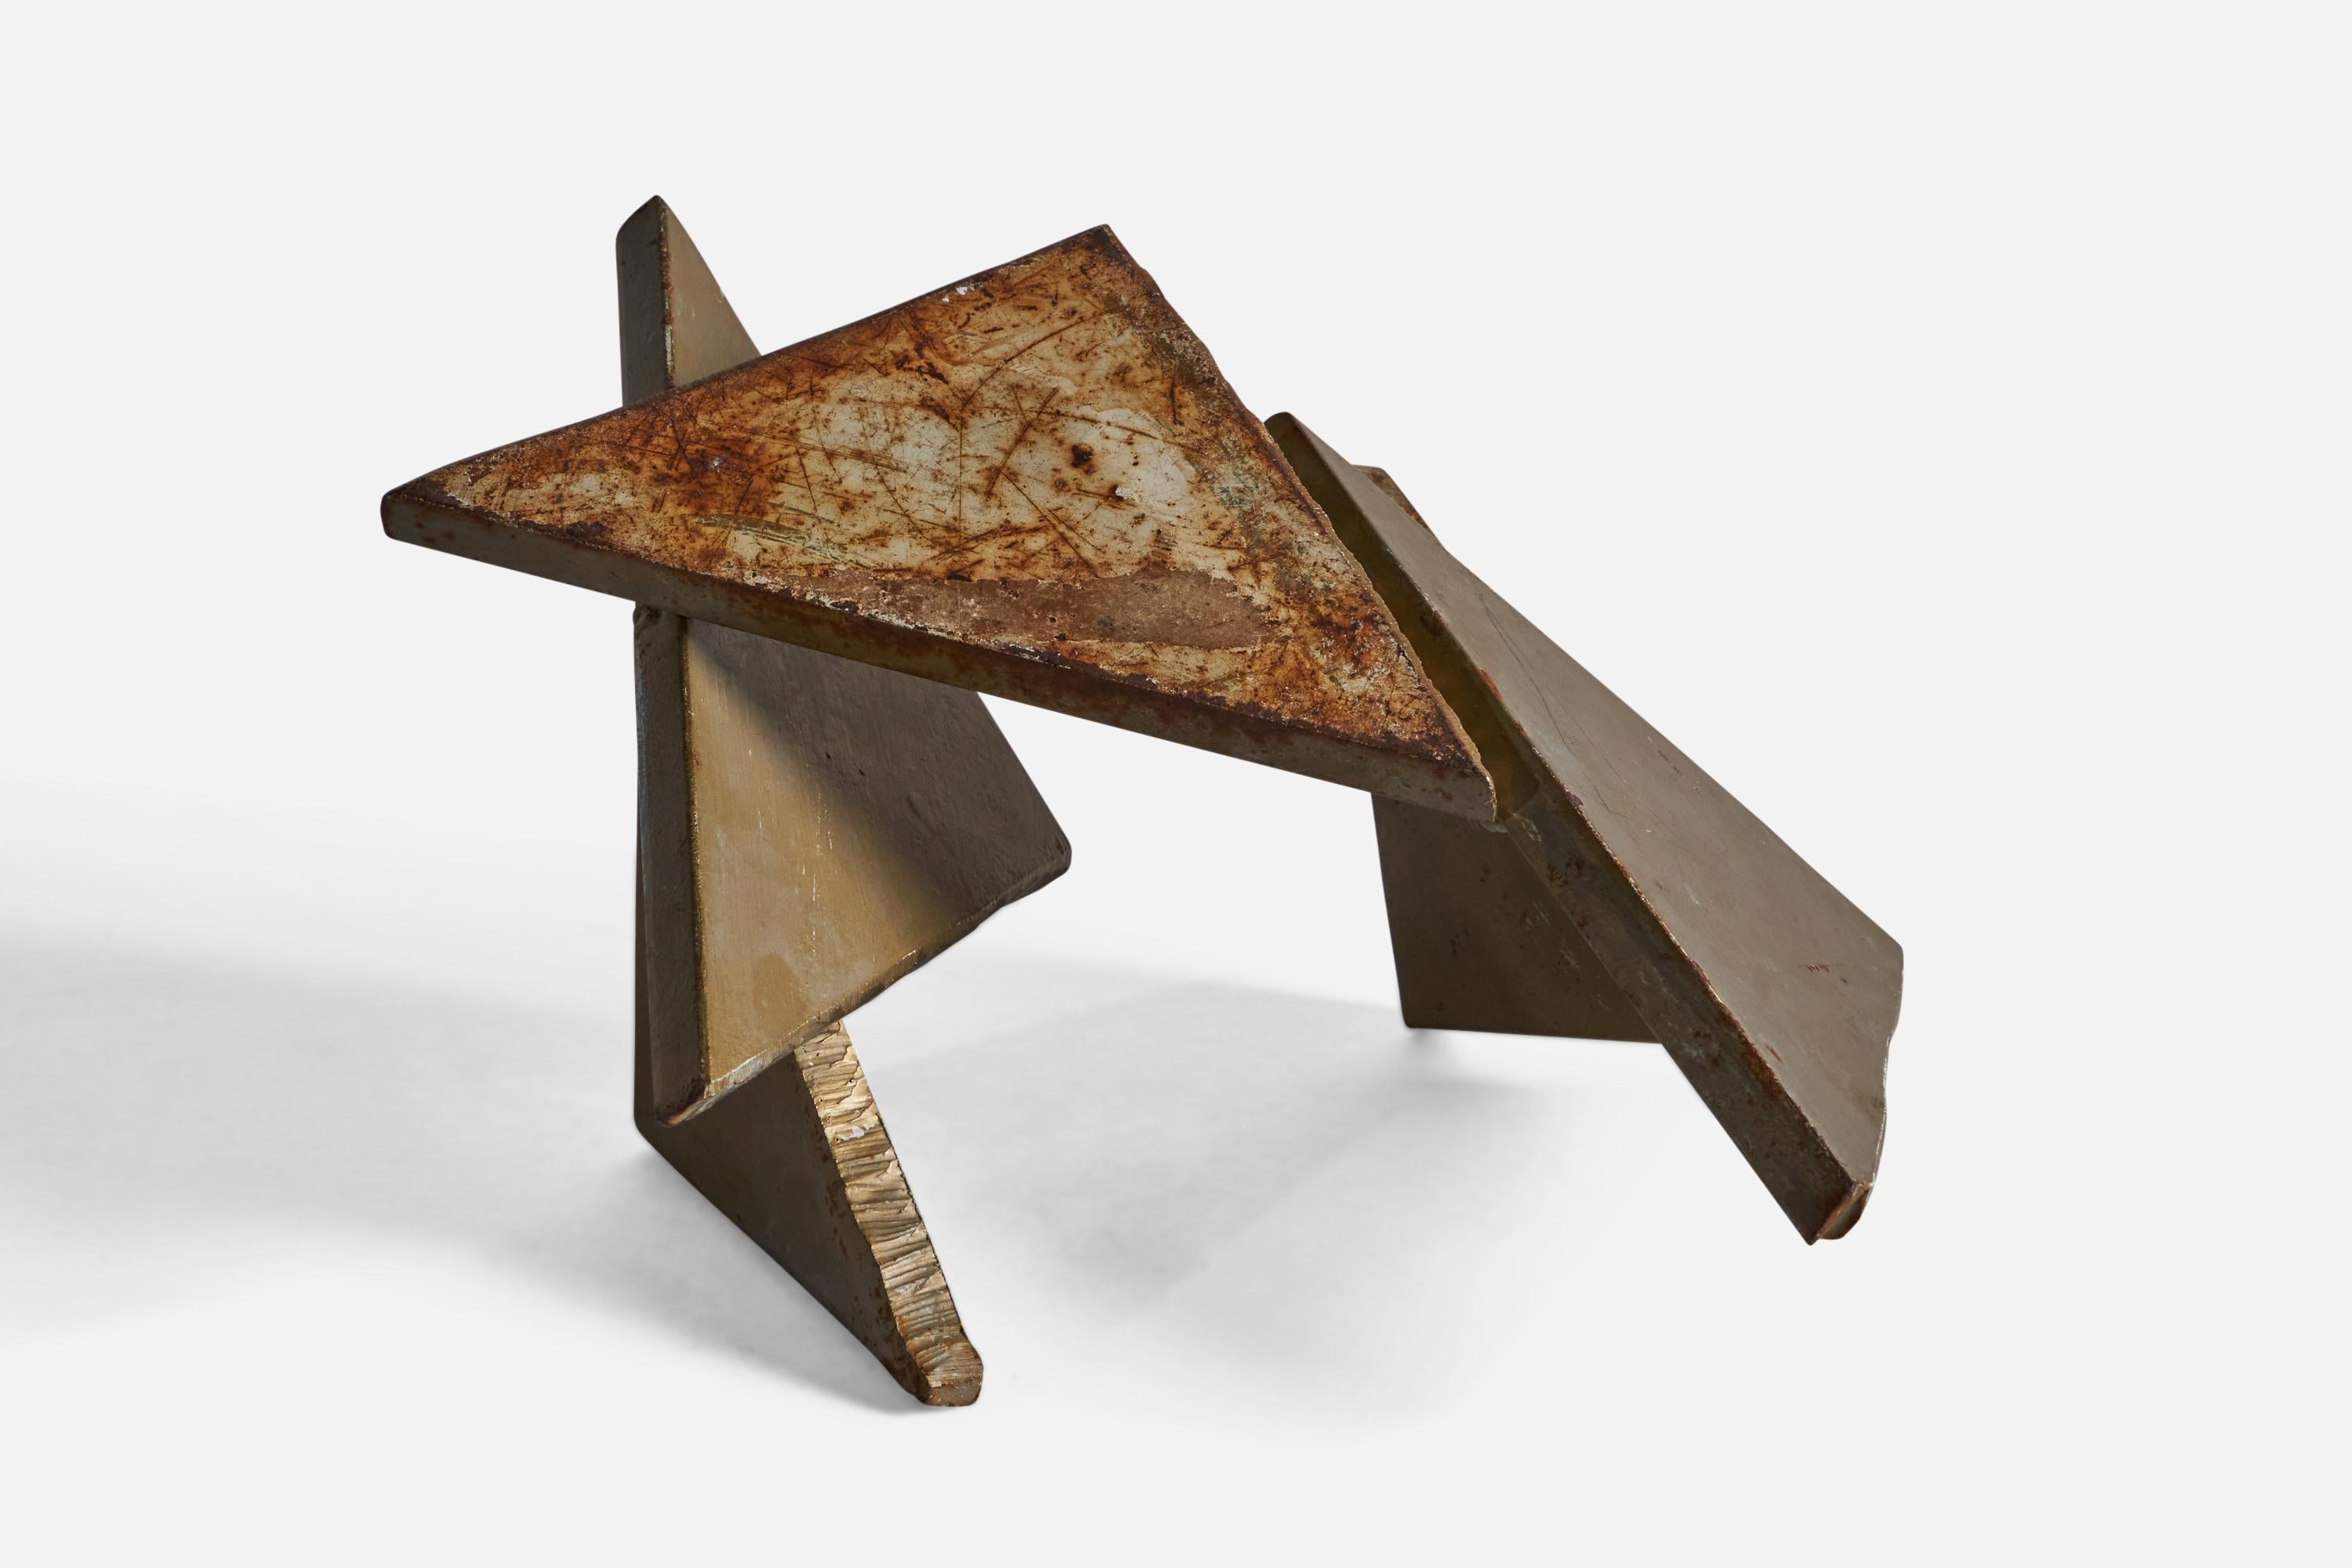 Sculpture abstraite en métal moulé, produite aux États-Unis, vers les années 1960.